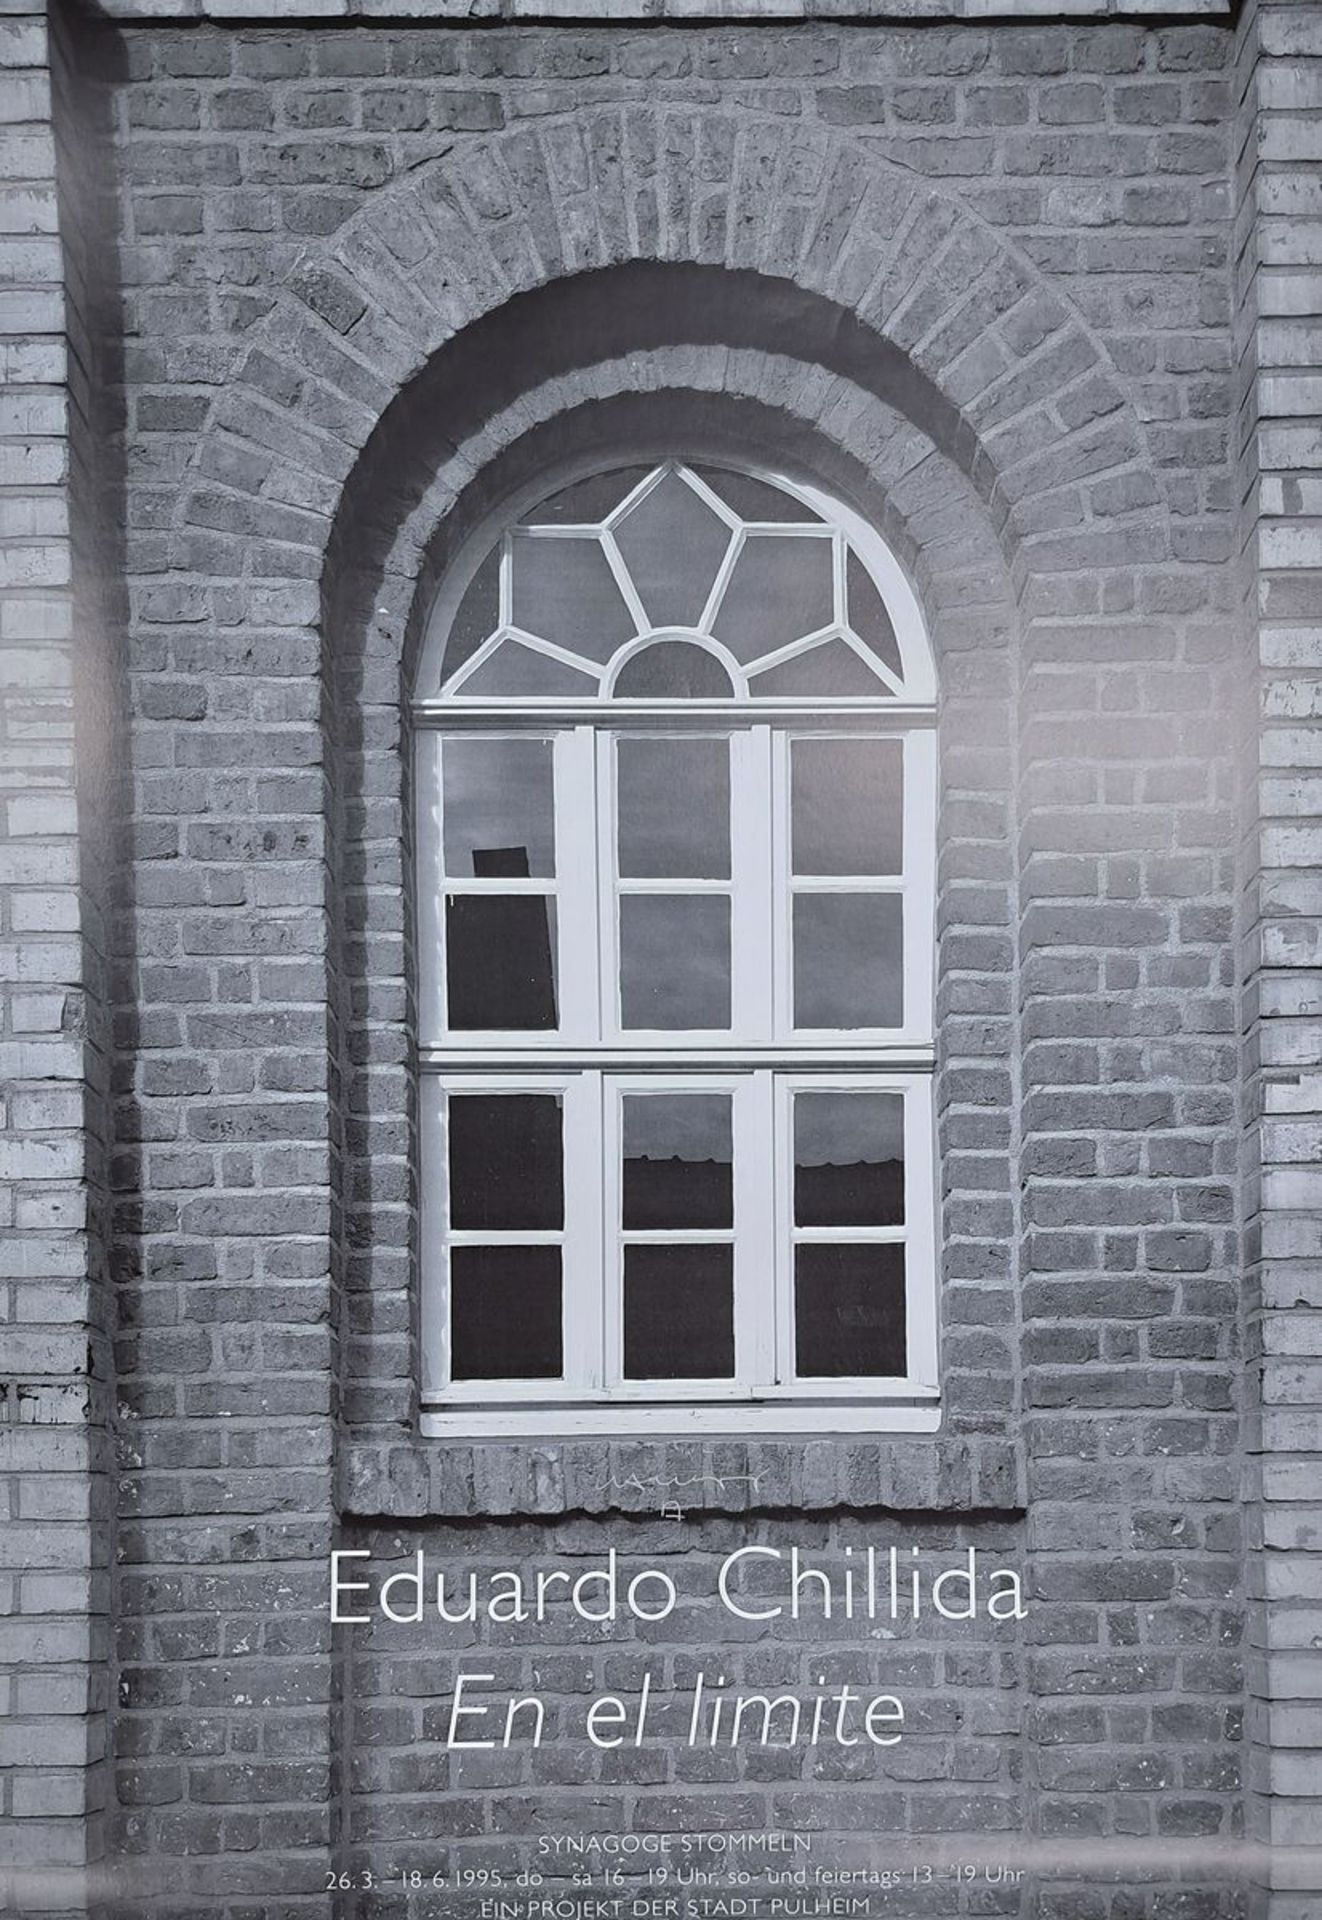 Eduardo Chilida, 1924-2002, Offetlithografie, handsign.,